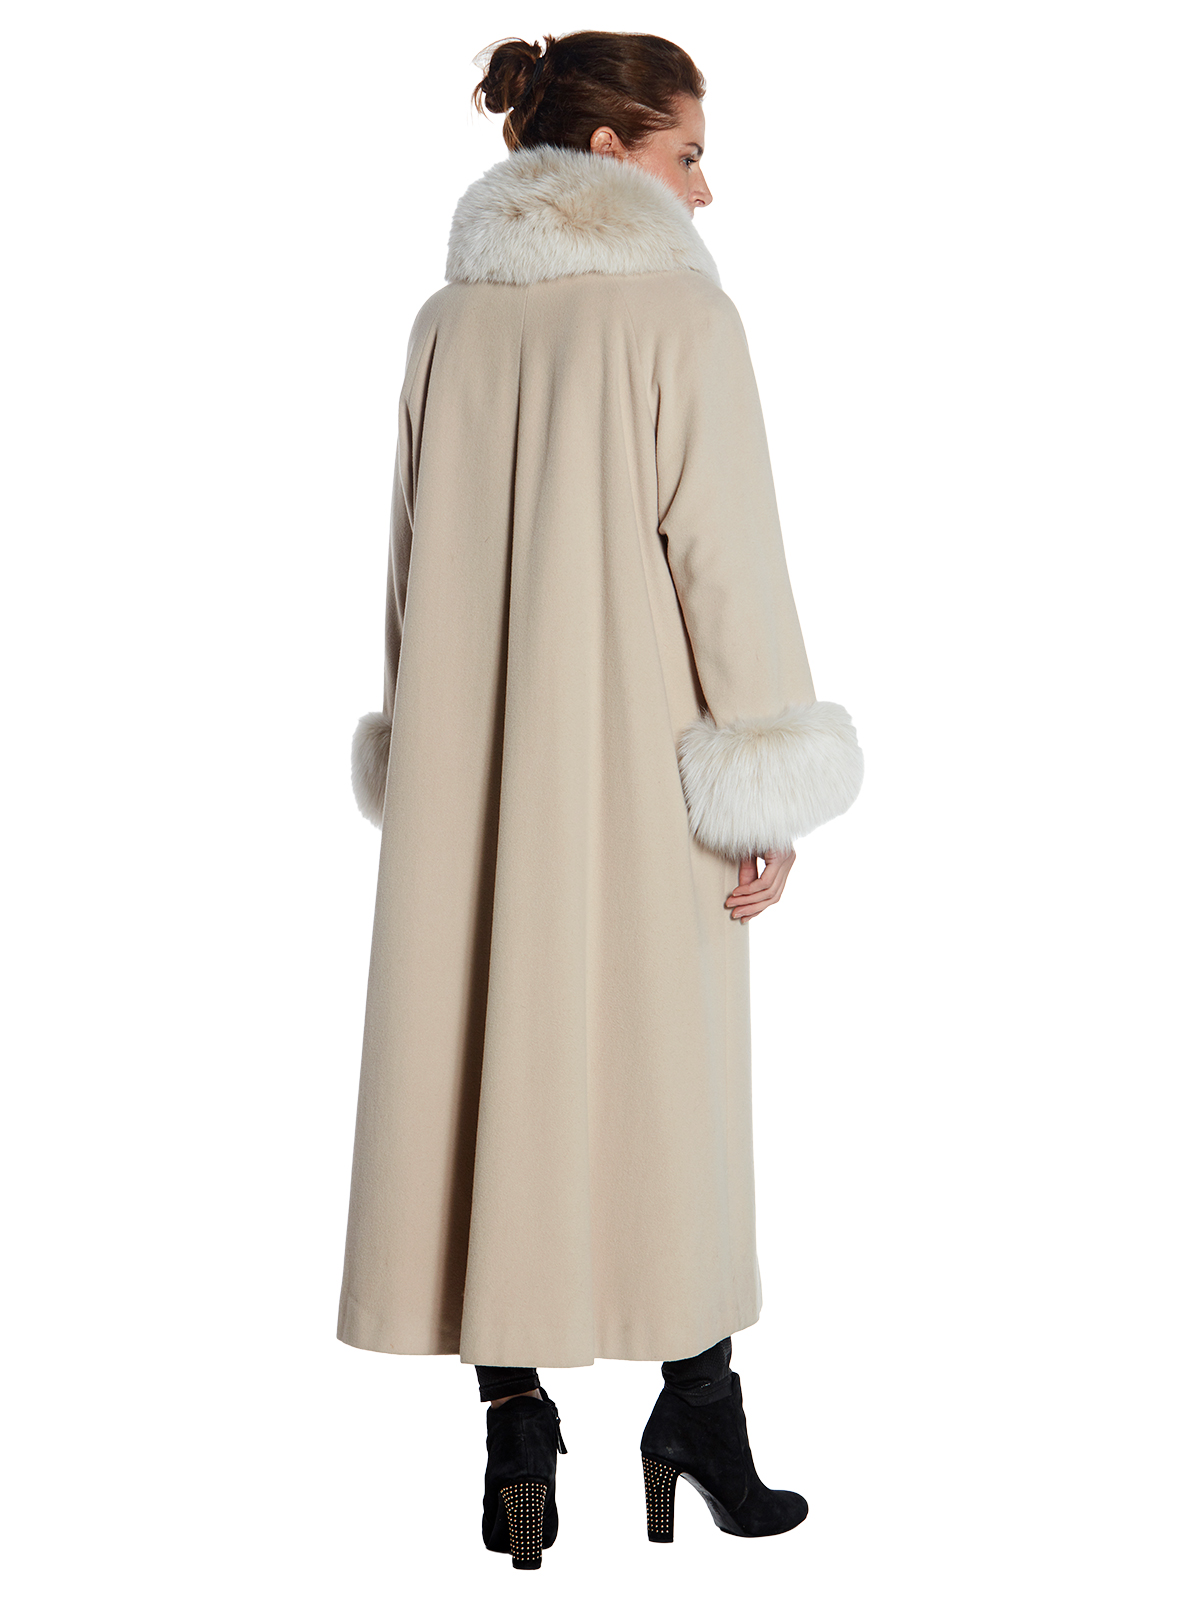 Beige Cashmere Coat - Women's Cashmere Coat - Large| Estate Furs